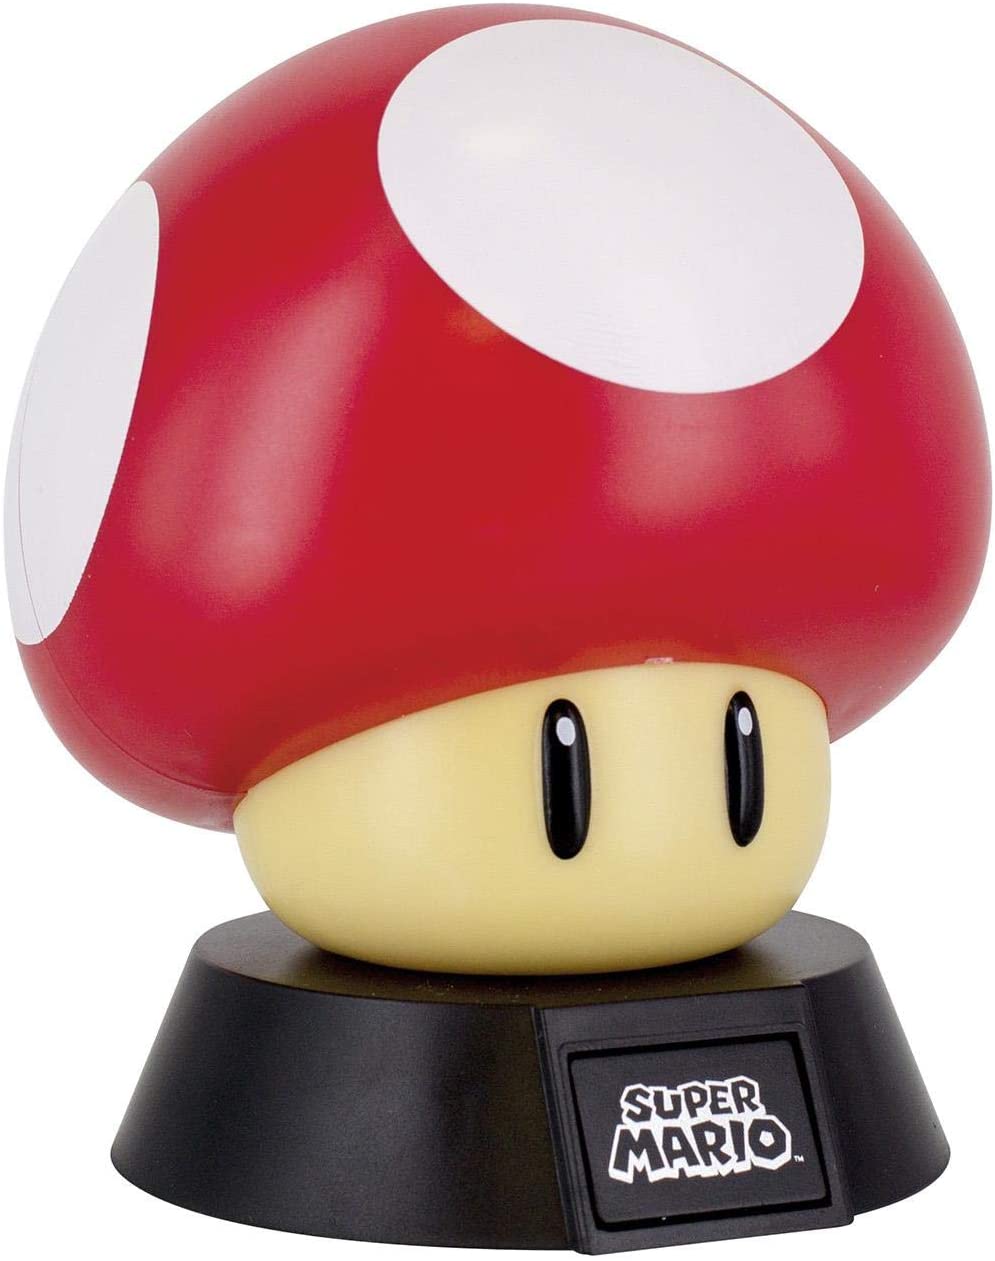 Super Mario Mushroom Light Tabletop Nightlight